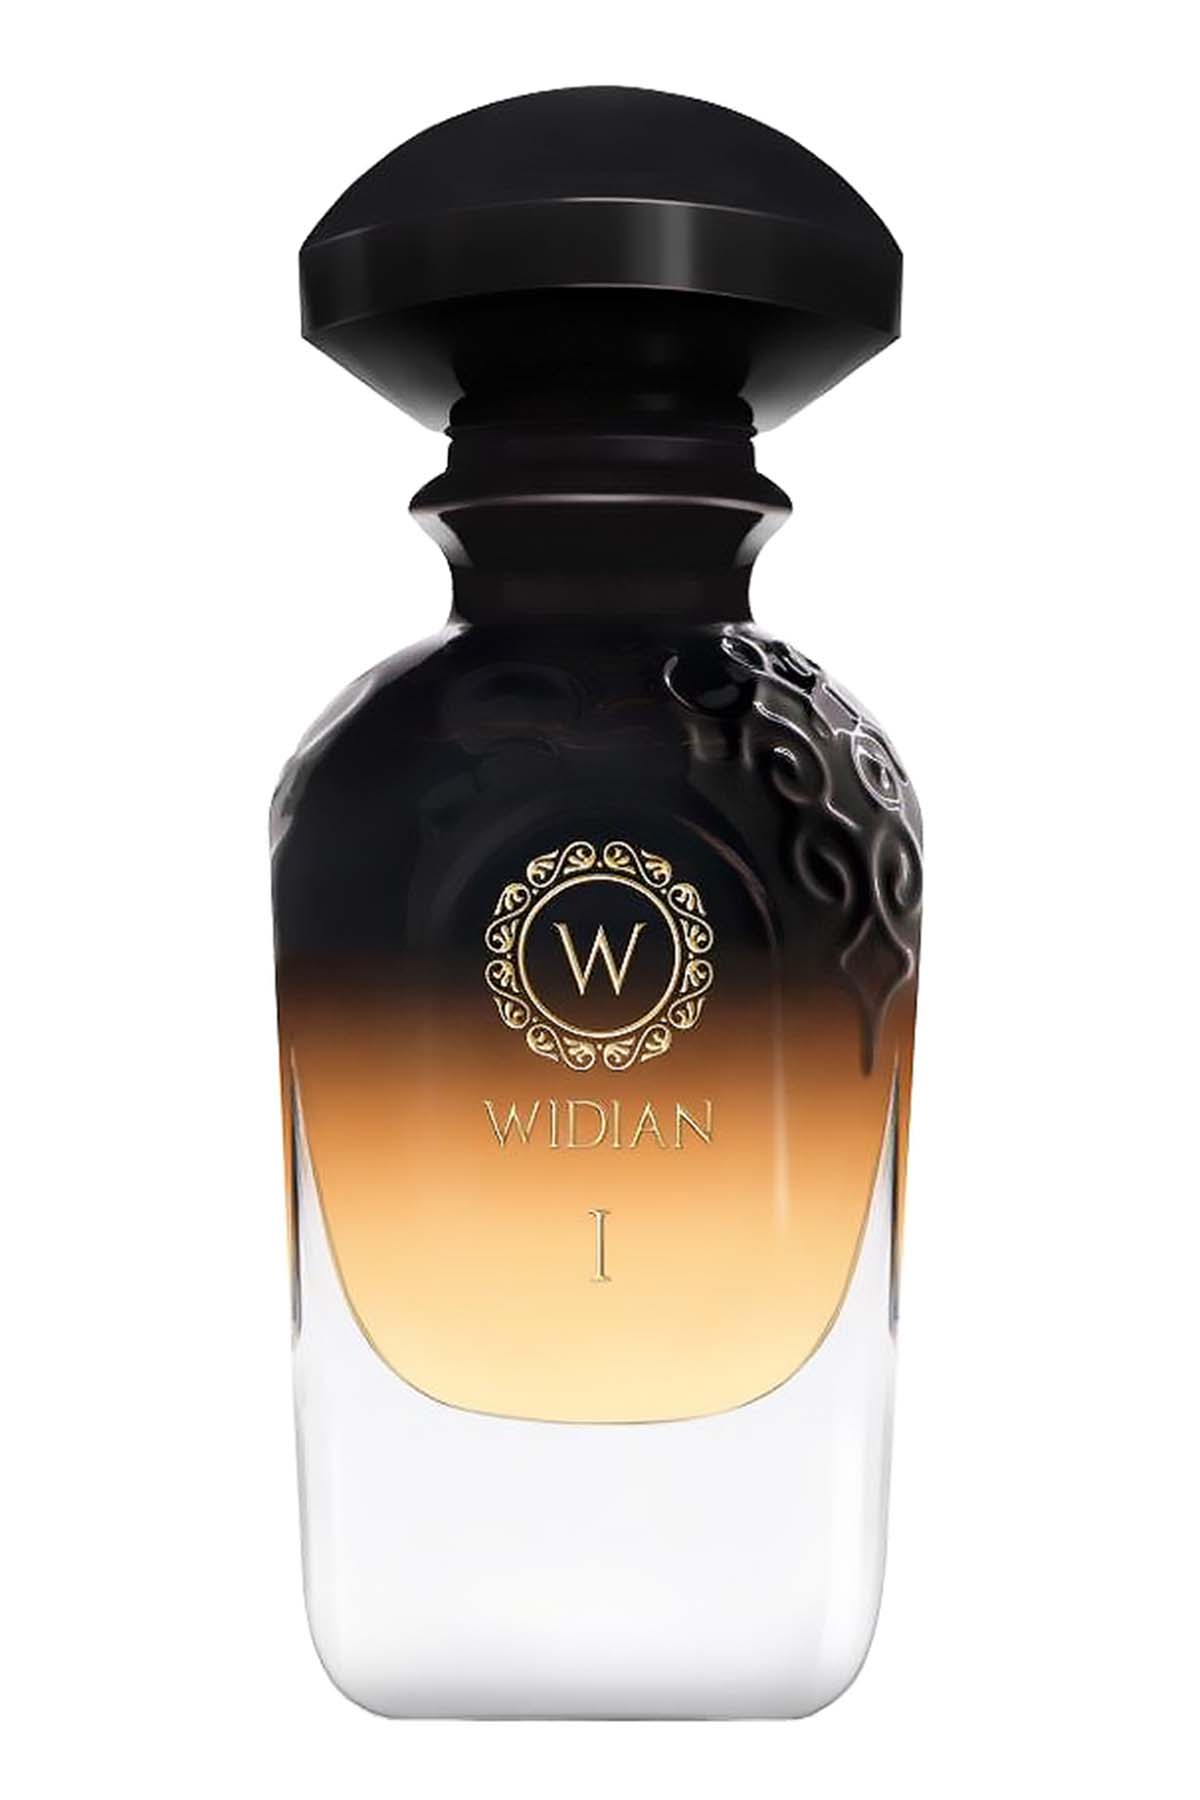 Widian Black I Extrait de Parfum